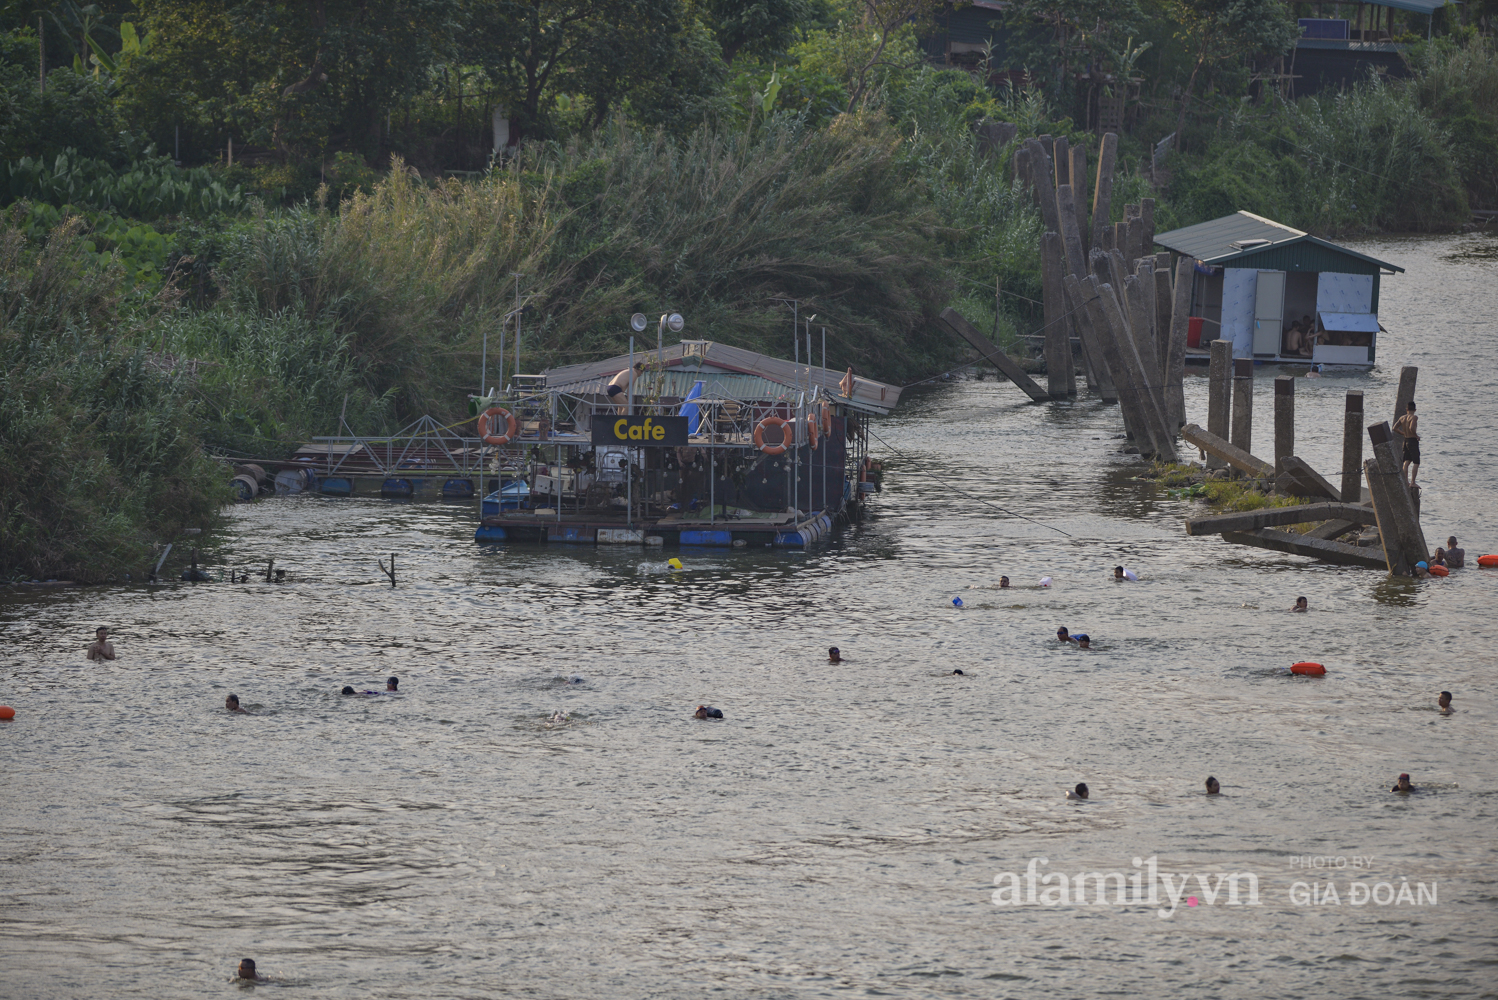 Bất chấp lệnh cấm tụ tập đông người, người Hà Nội vẫn đổ xô ra sông Hồng giải nhiệt - Ảnh 6.